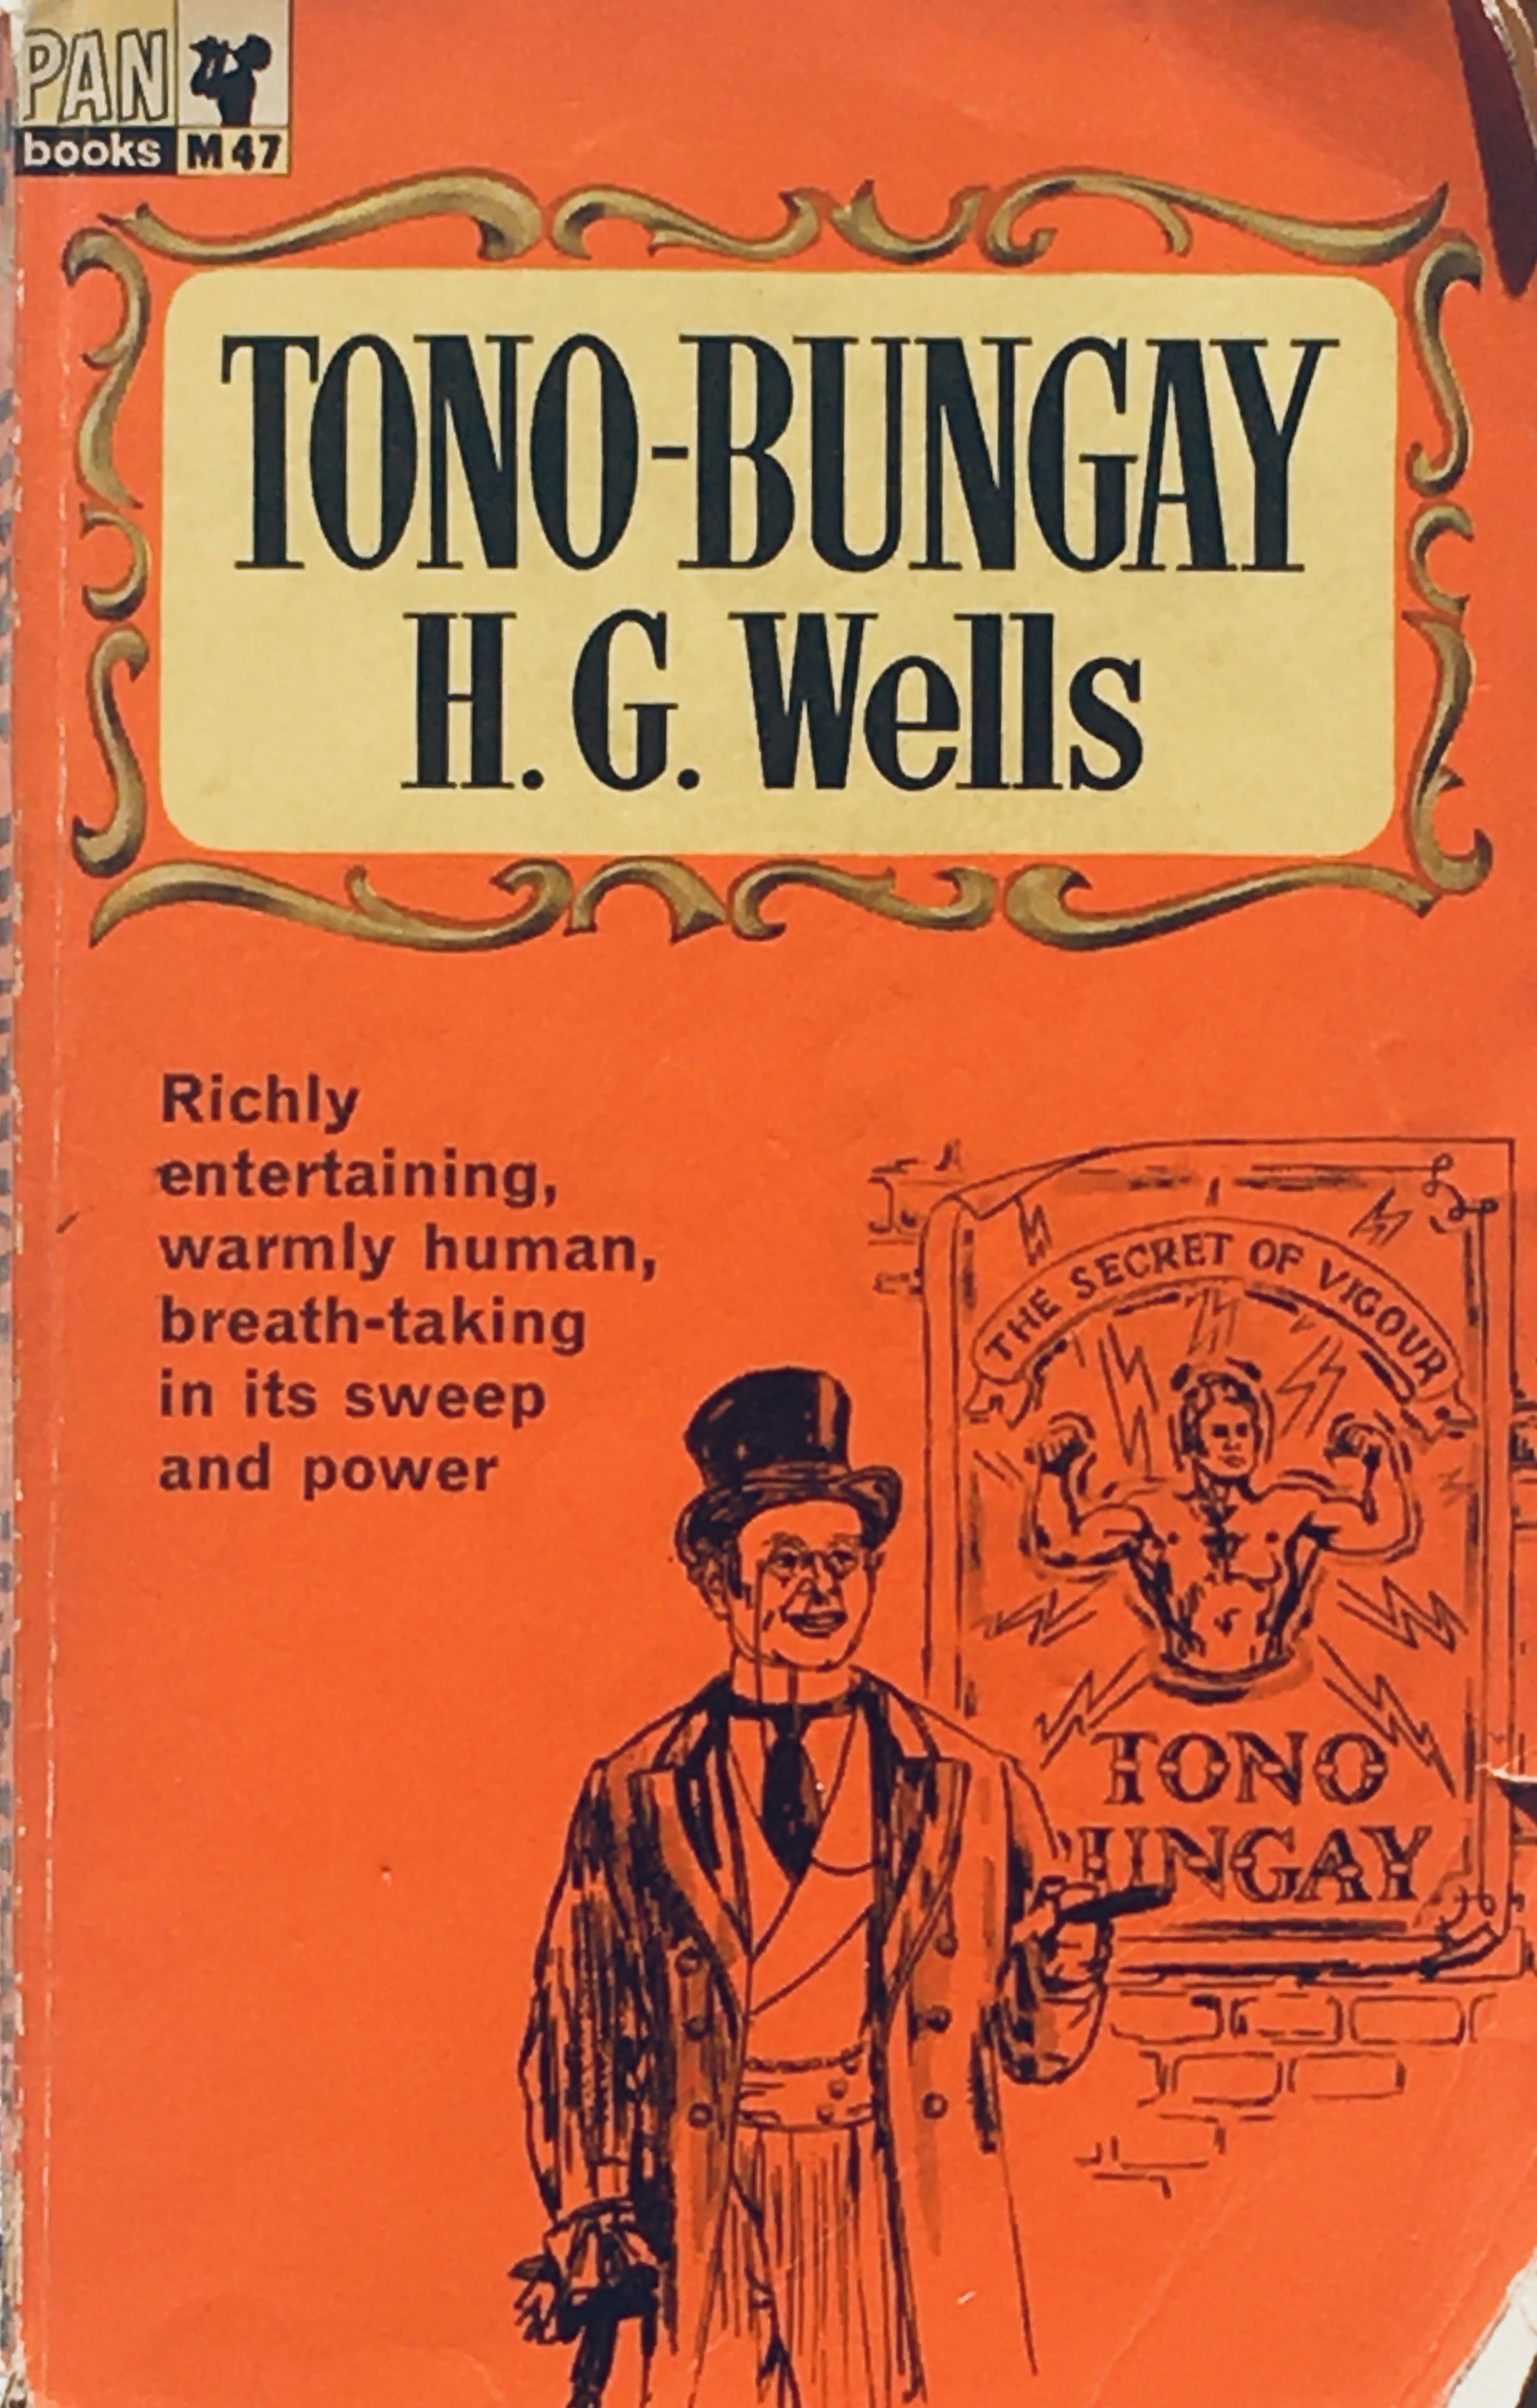 copertina del libro di Wells, Tono-Bungay